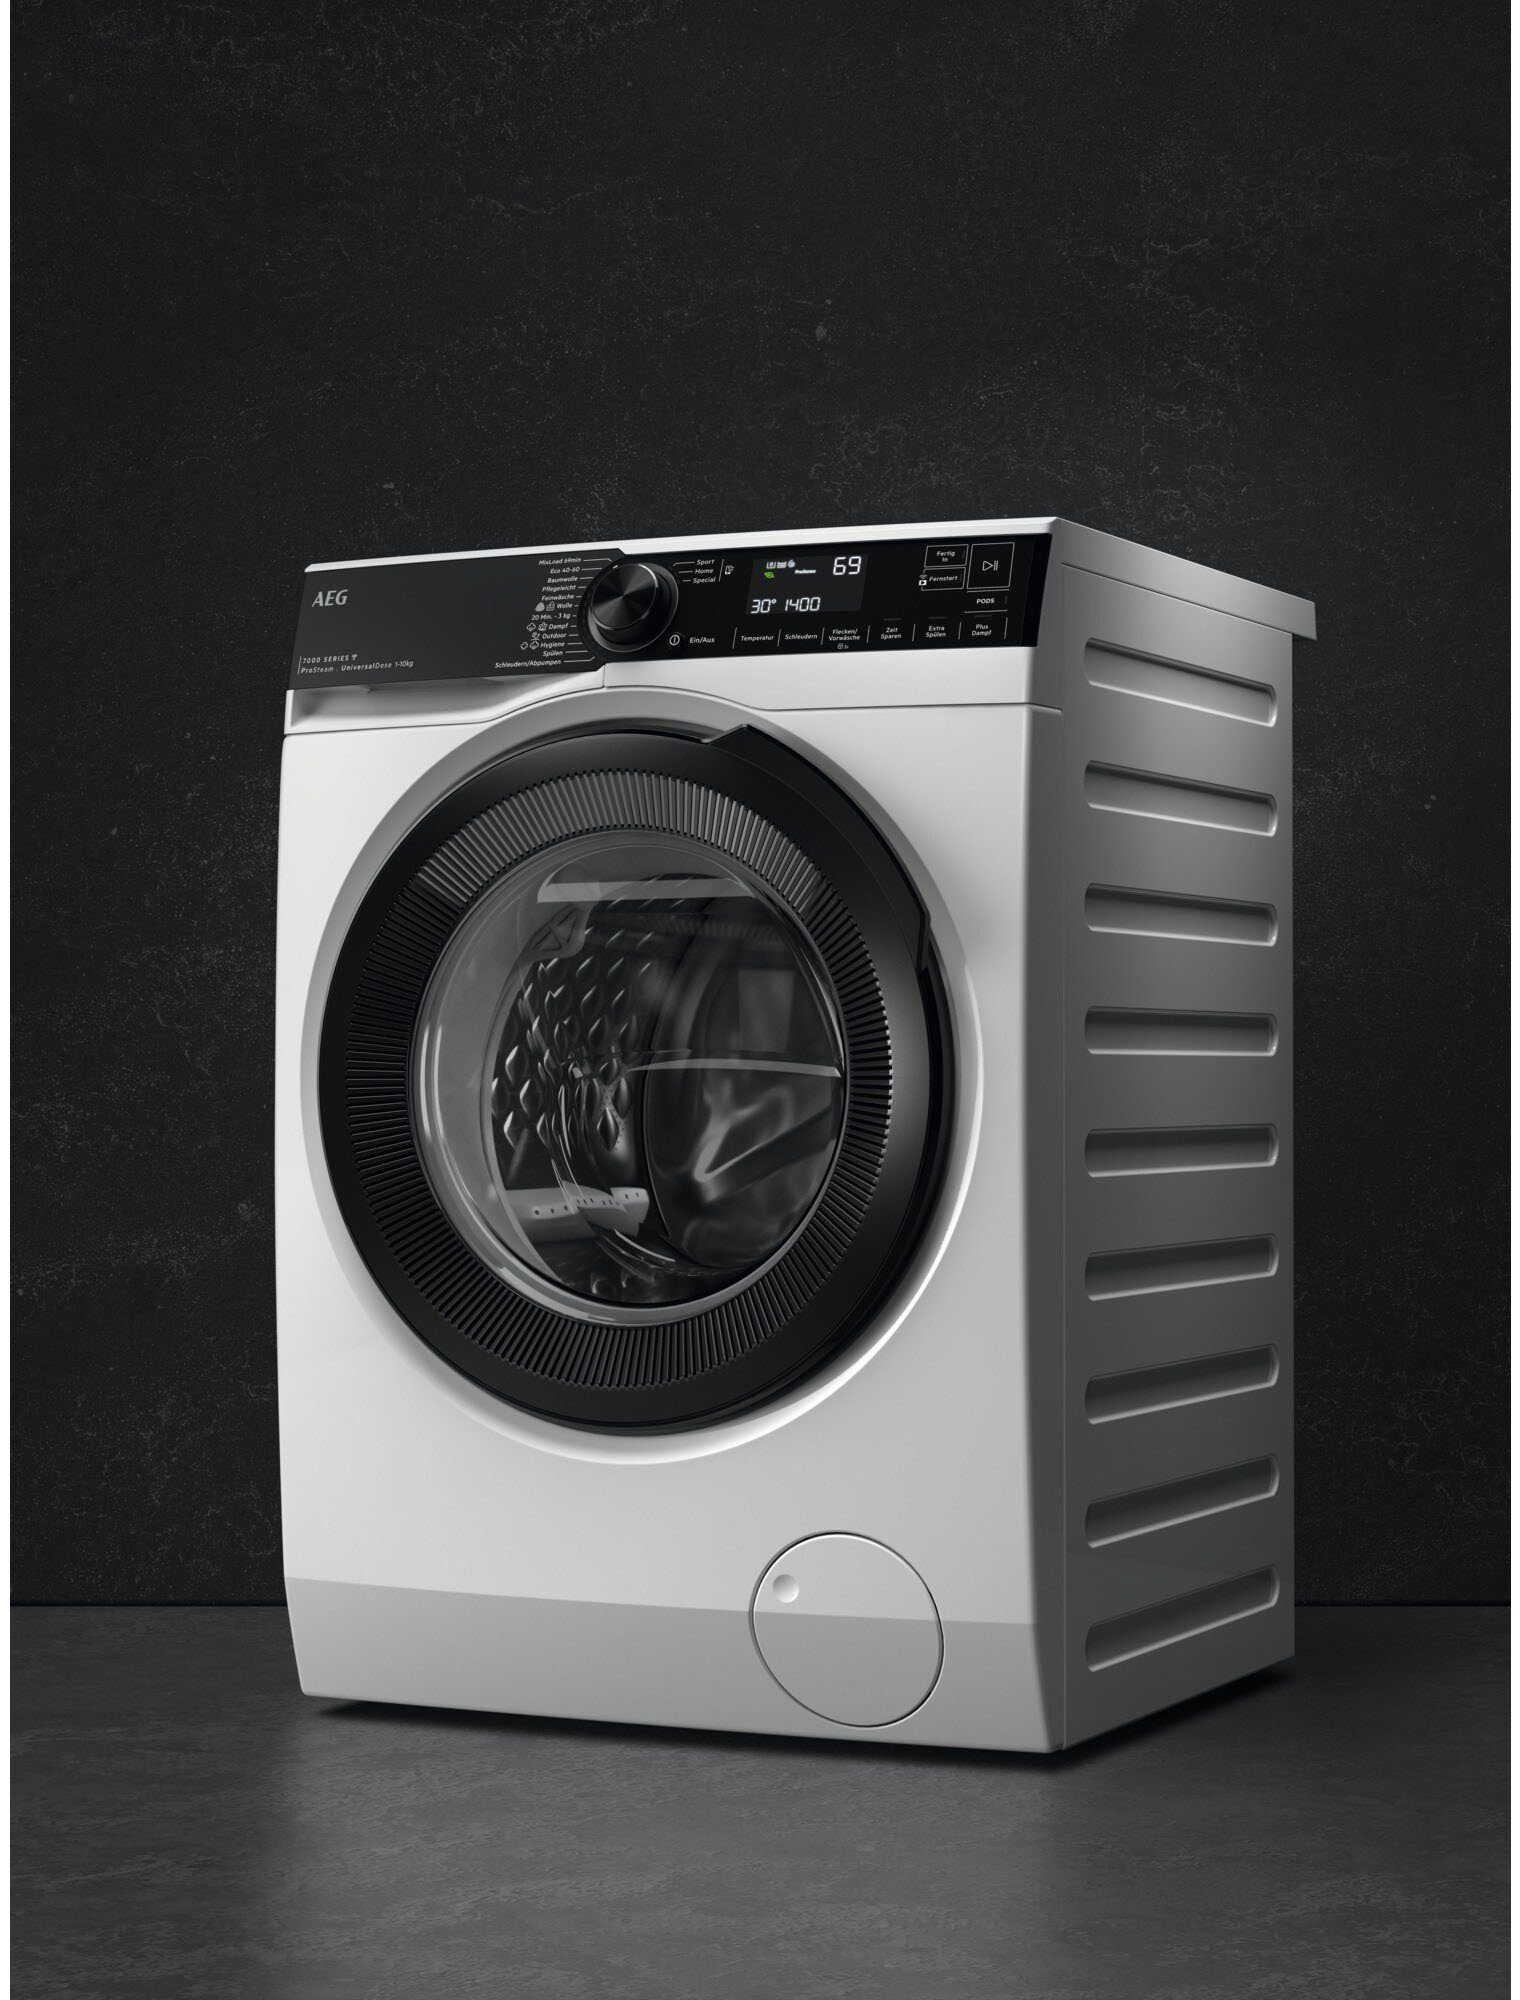 Waschmaschine 10 Wifi 1400 LR7E75400, U/min, Wasserverbrauch ProSteam - 96 weniger % Dampf-Programm für AEG & kg,